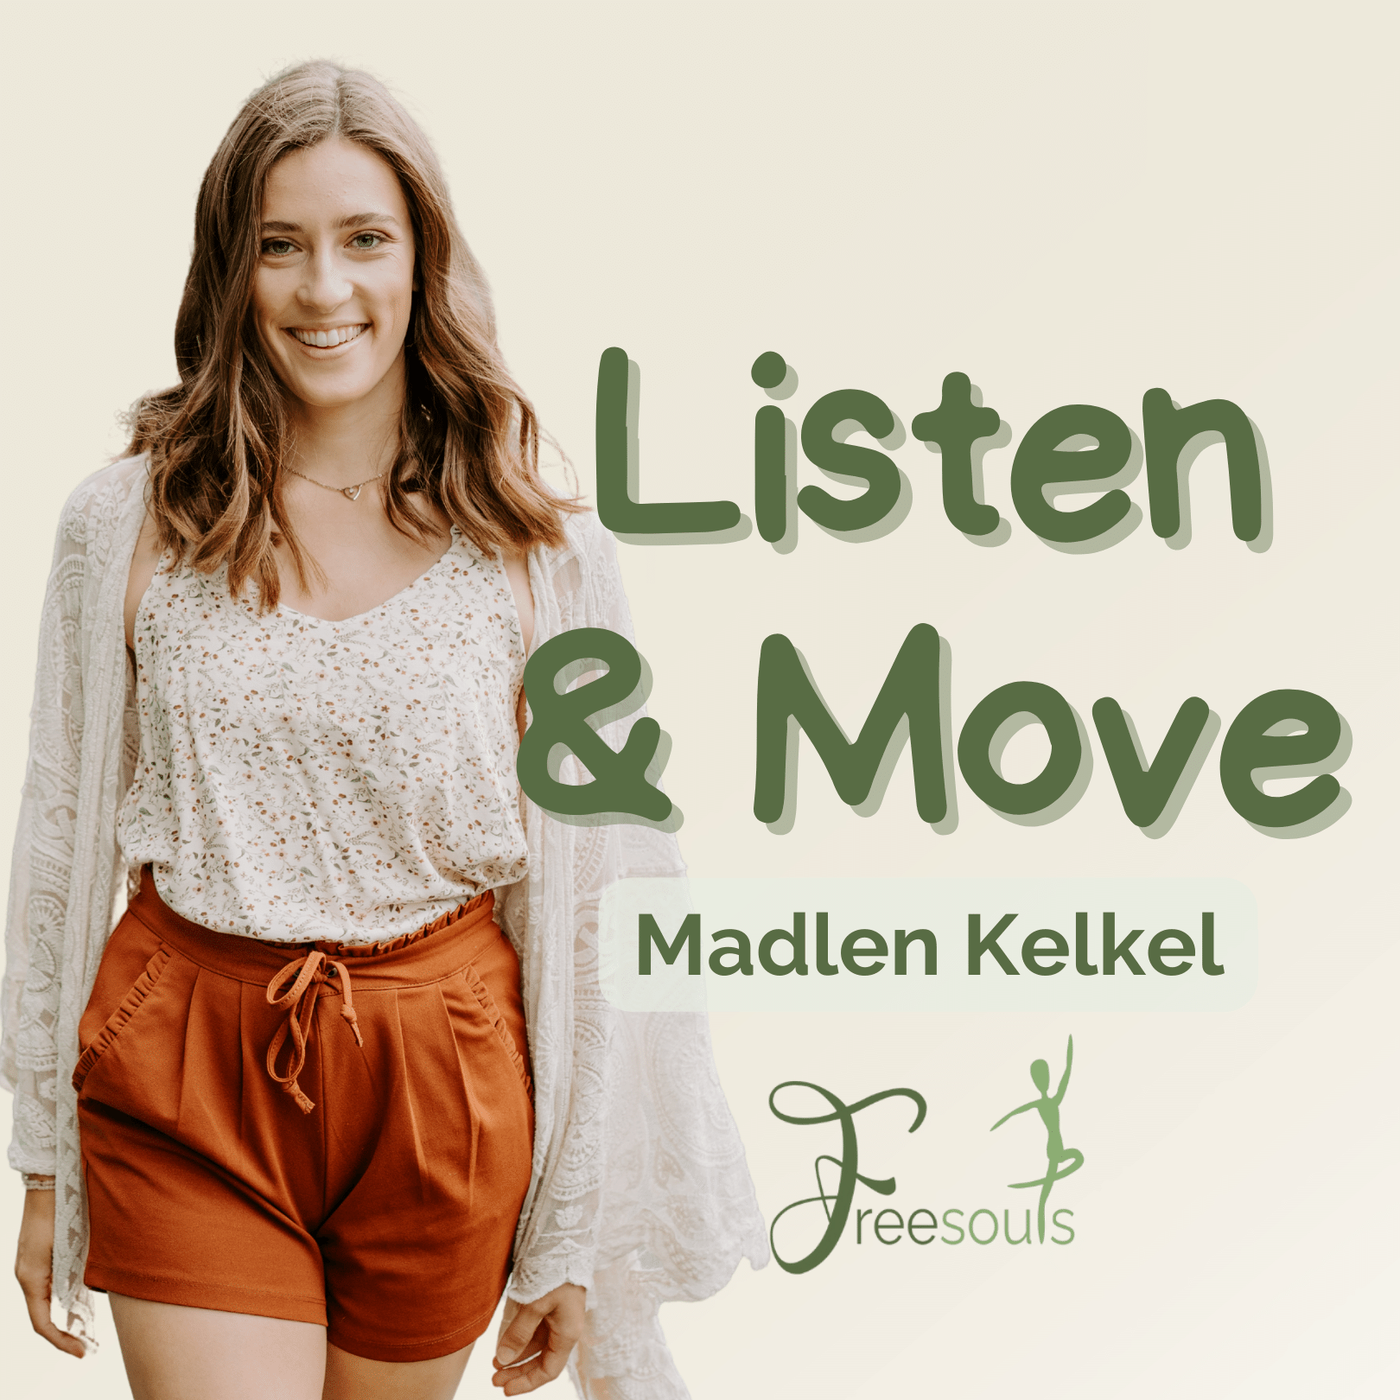 Listen & Move - für mehr Lebensenergie und inneren Frieden